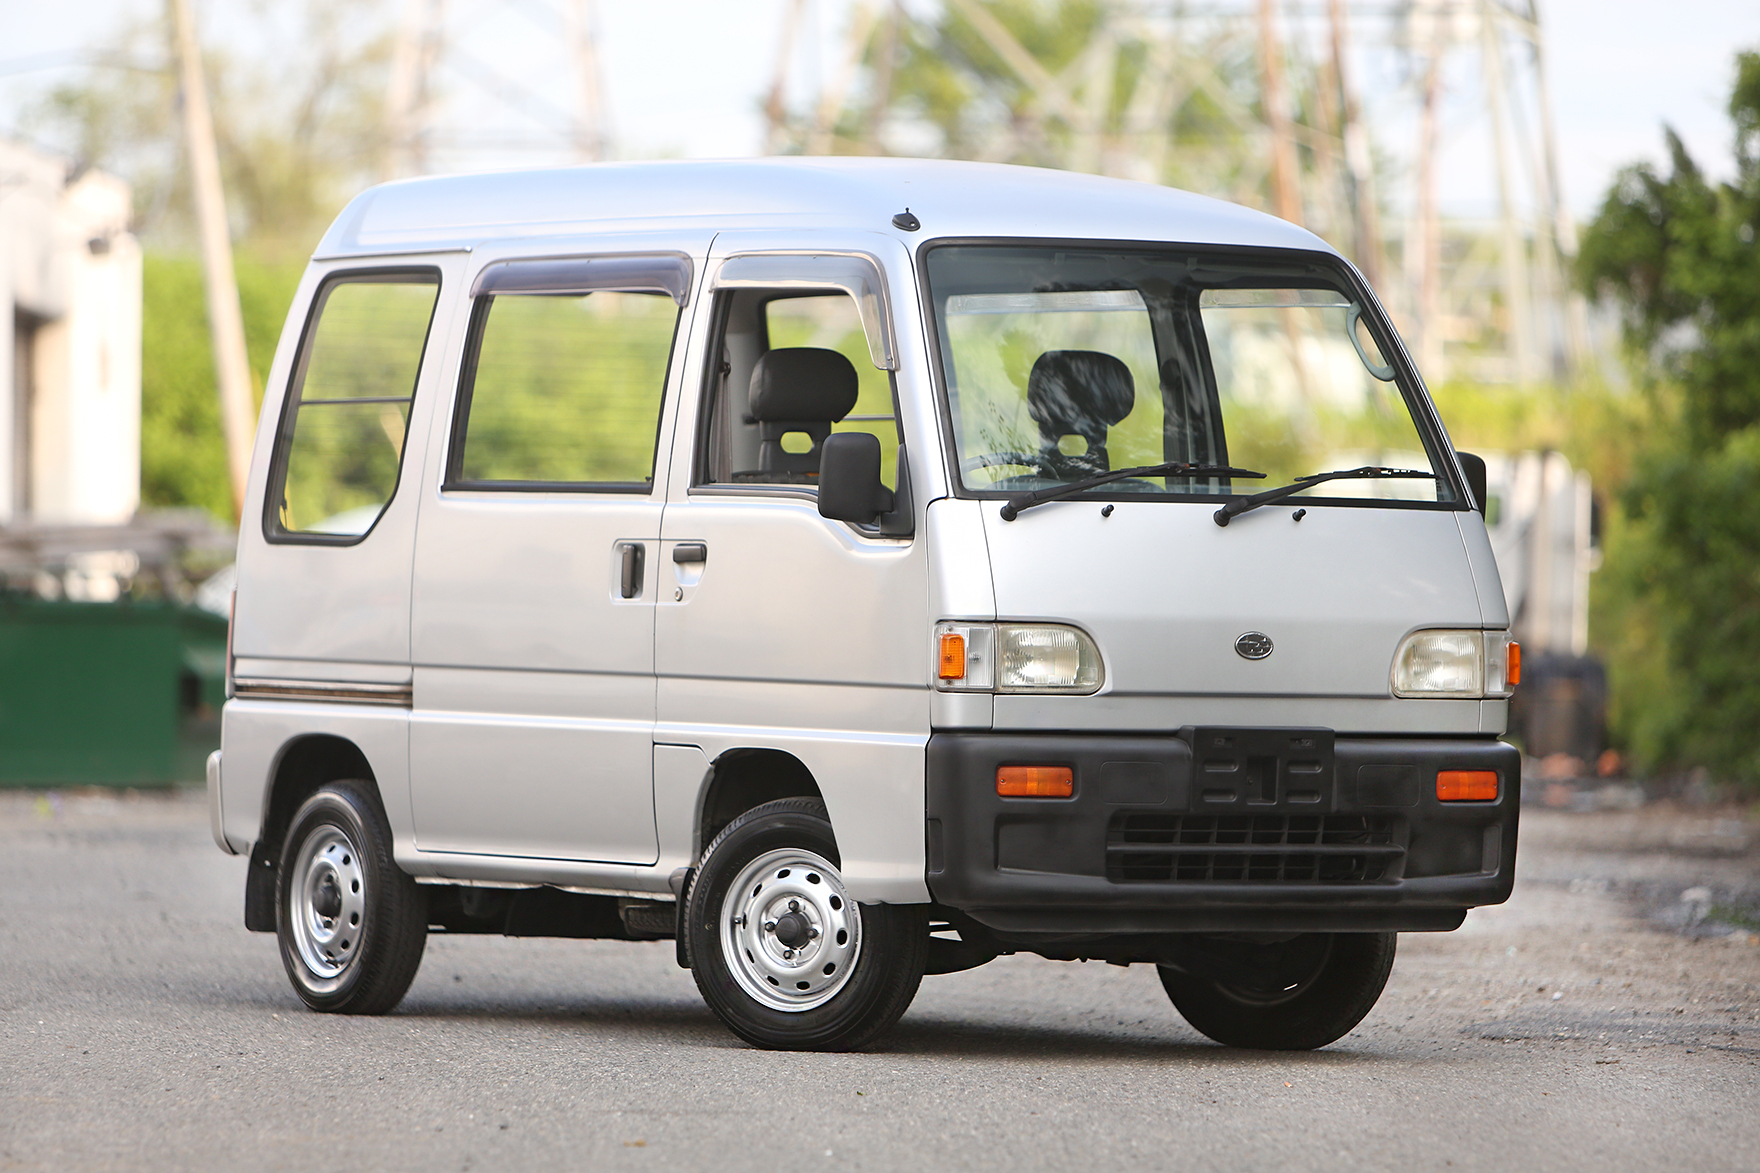 1994 Subaru Sambar Van - $7,495